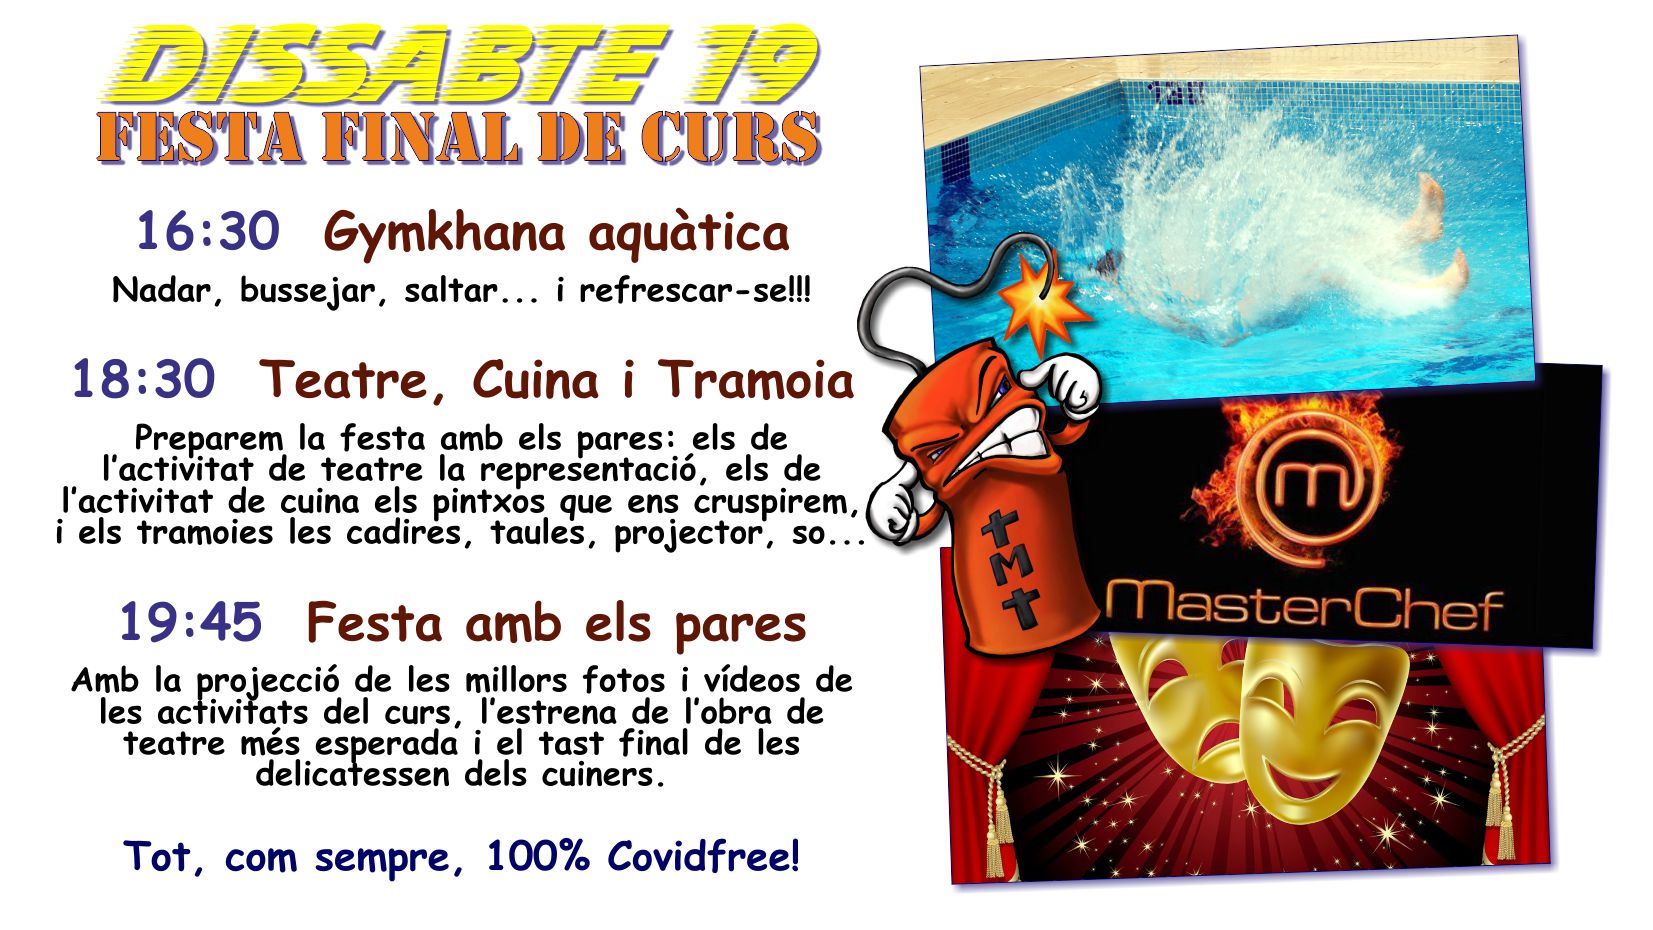 Gymcana-aquatica-Festa-fi-de-curs.2